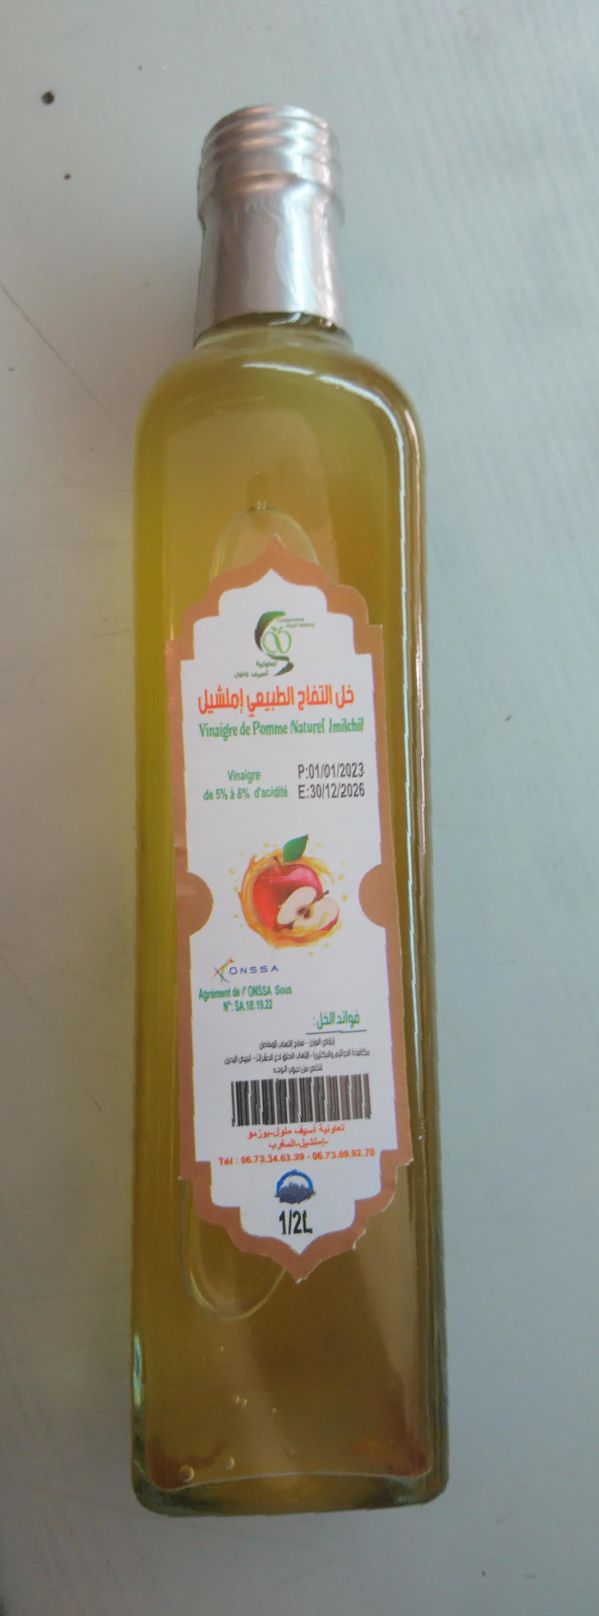 Vinaigre de cidre de pomme Imilchil خل التفاح إملشيل